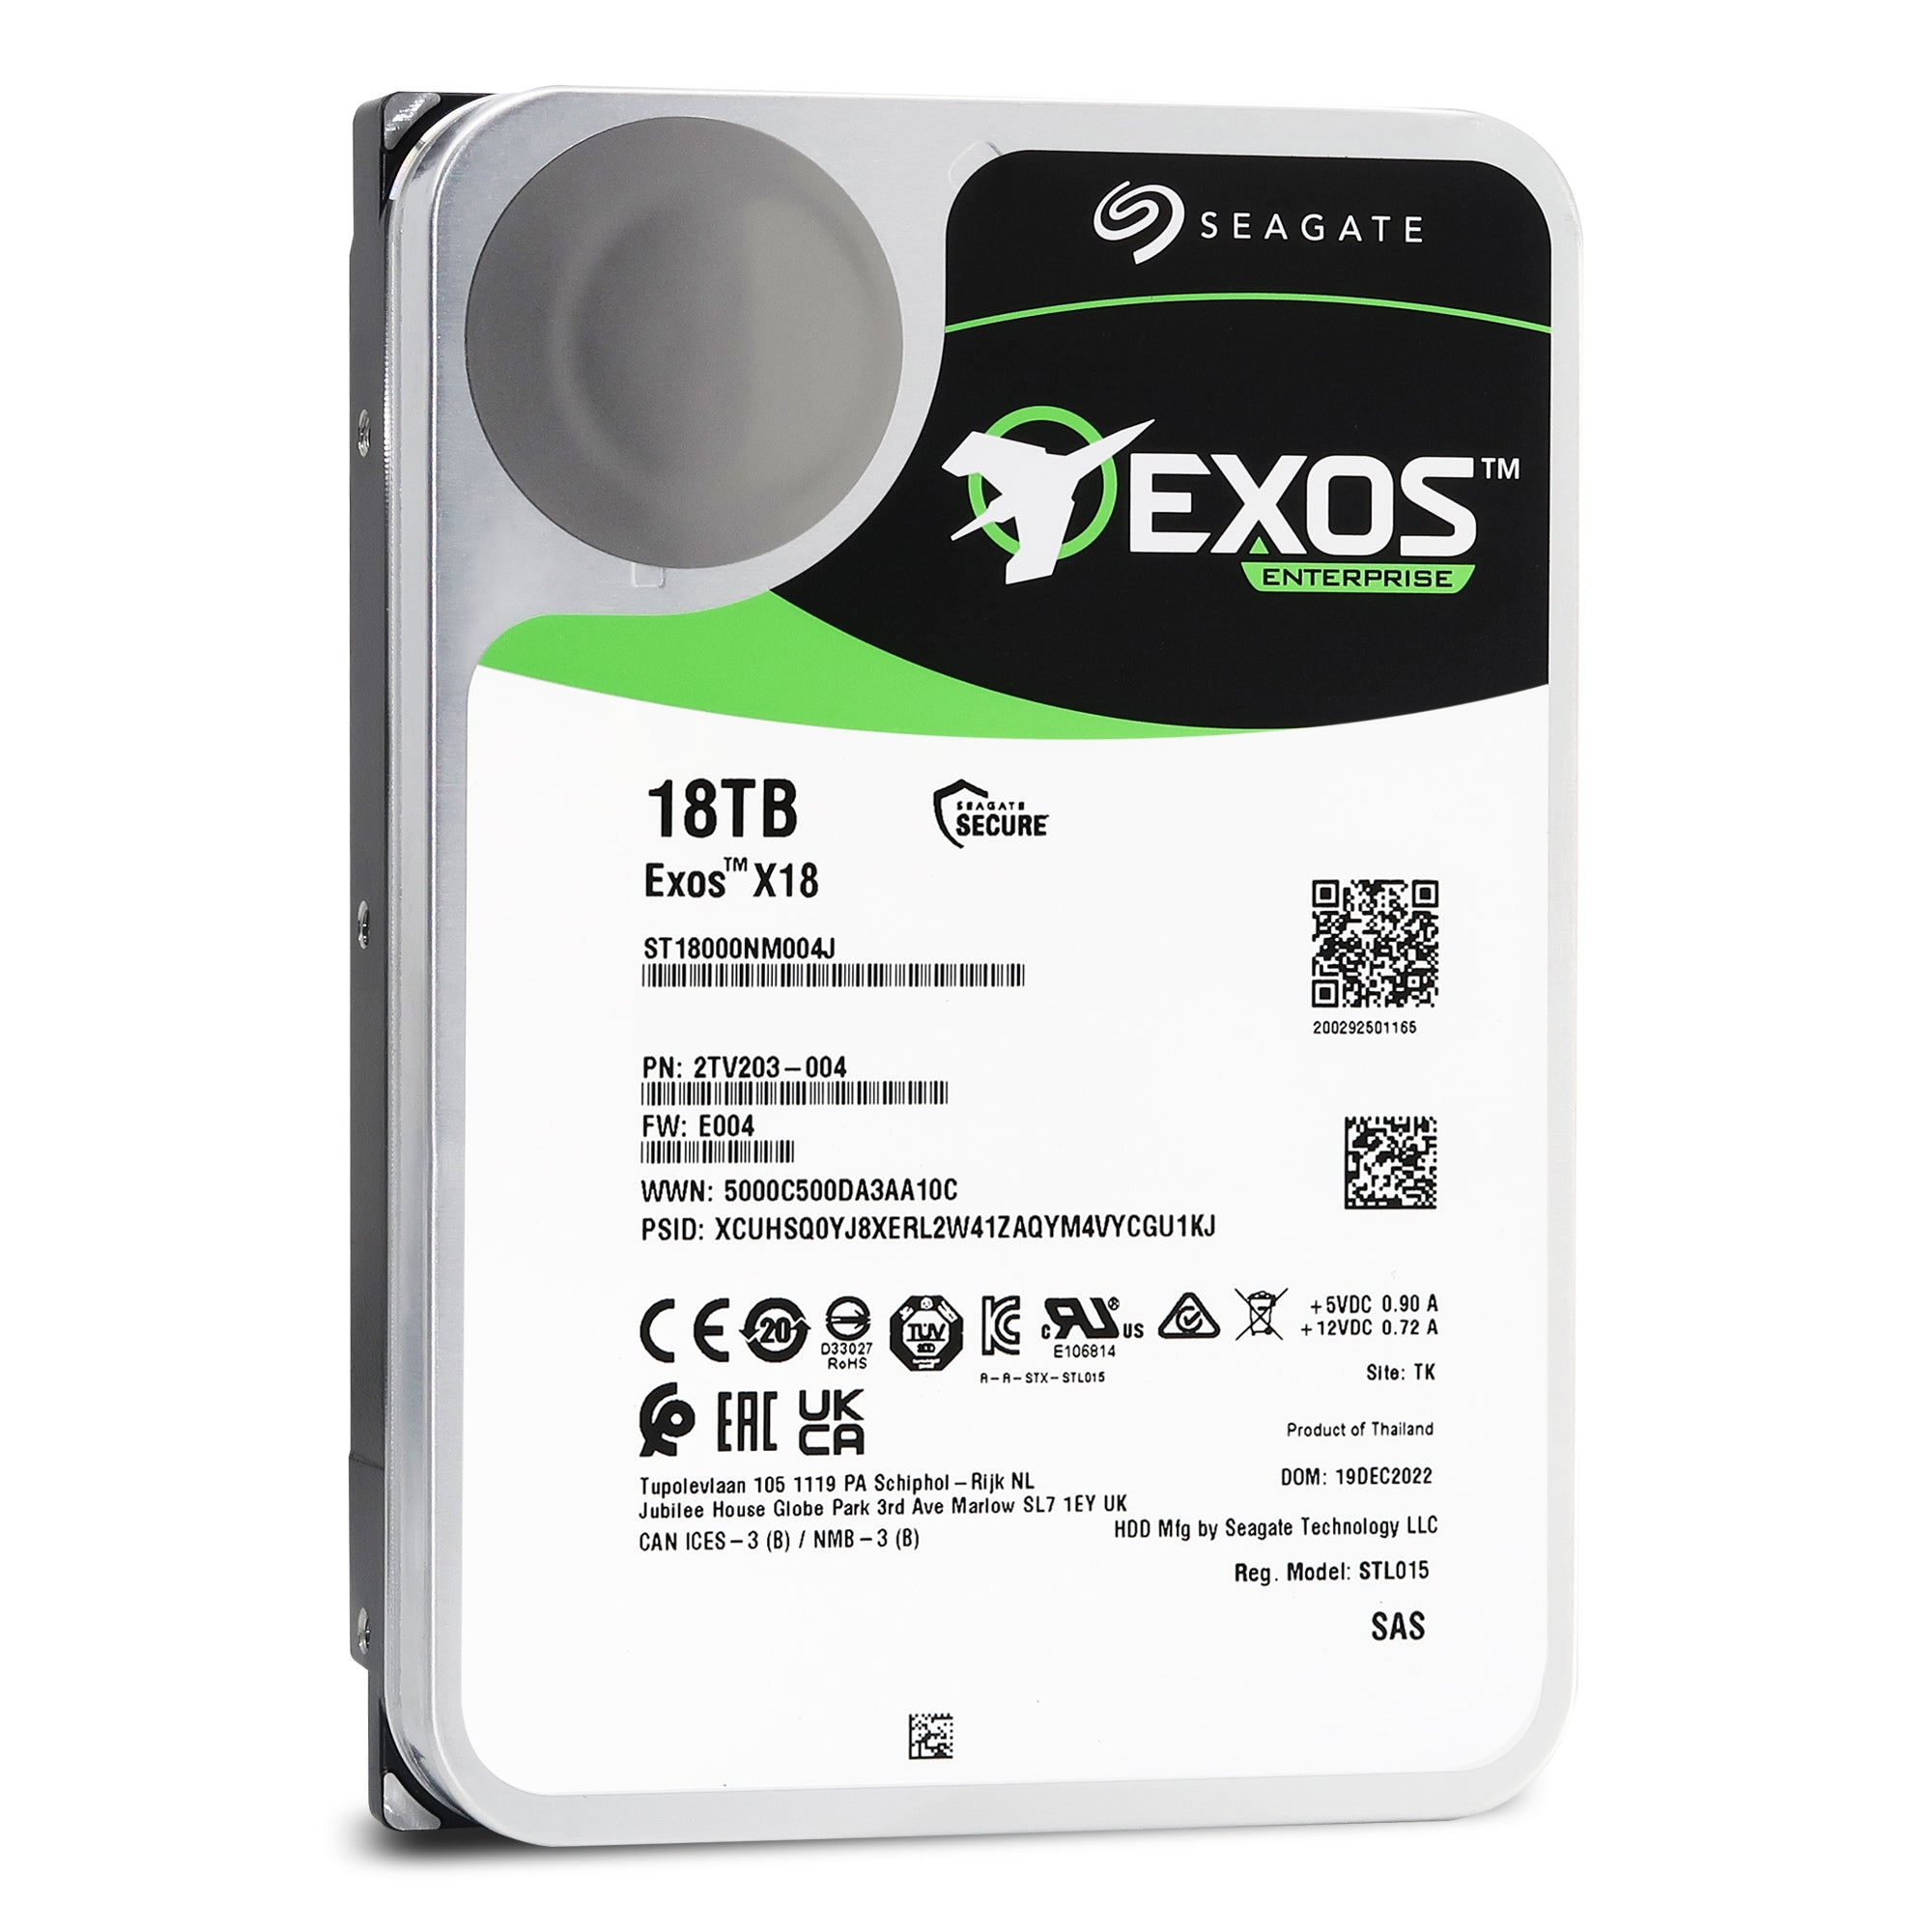 Seagate Exos X18 ST18000NM004J - hard drive - 18 TB - SAS 12Gb/s -  ST18000NM004J - Internal Hard Drives 